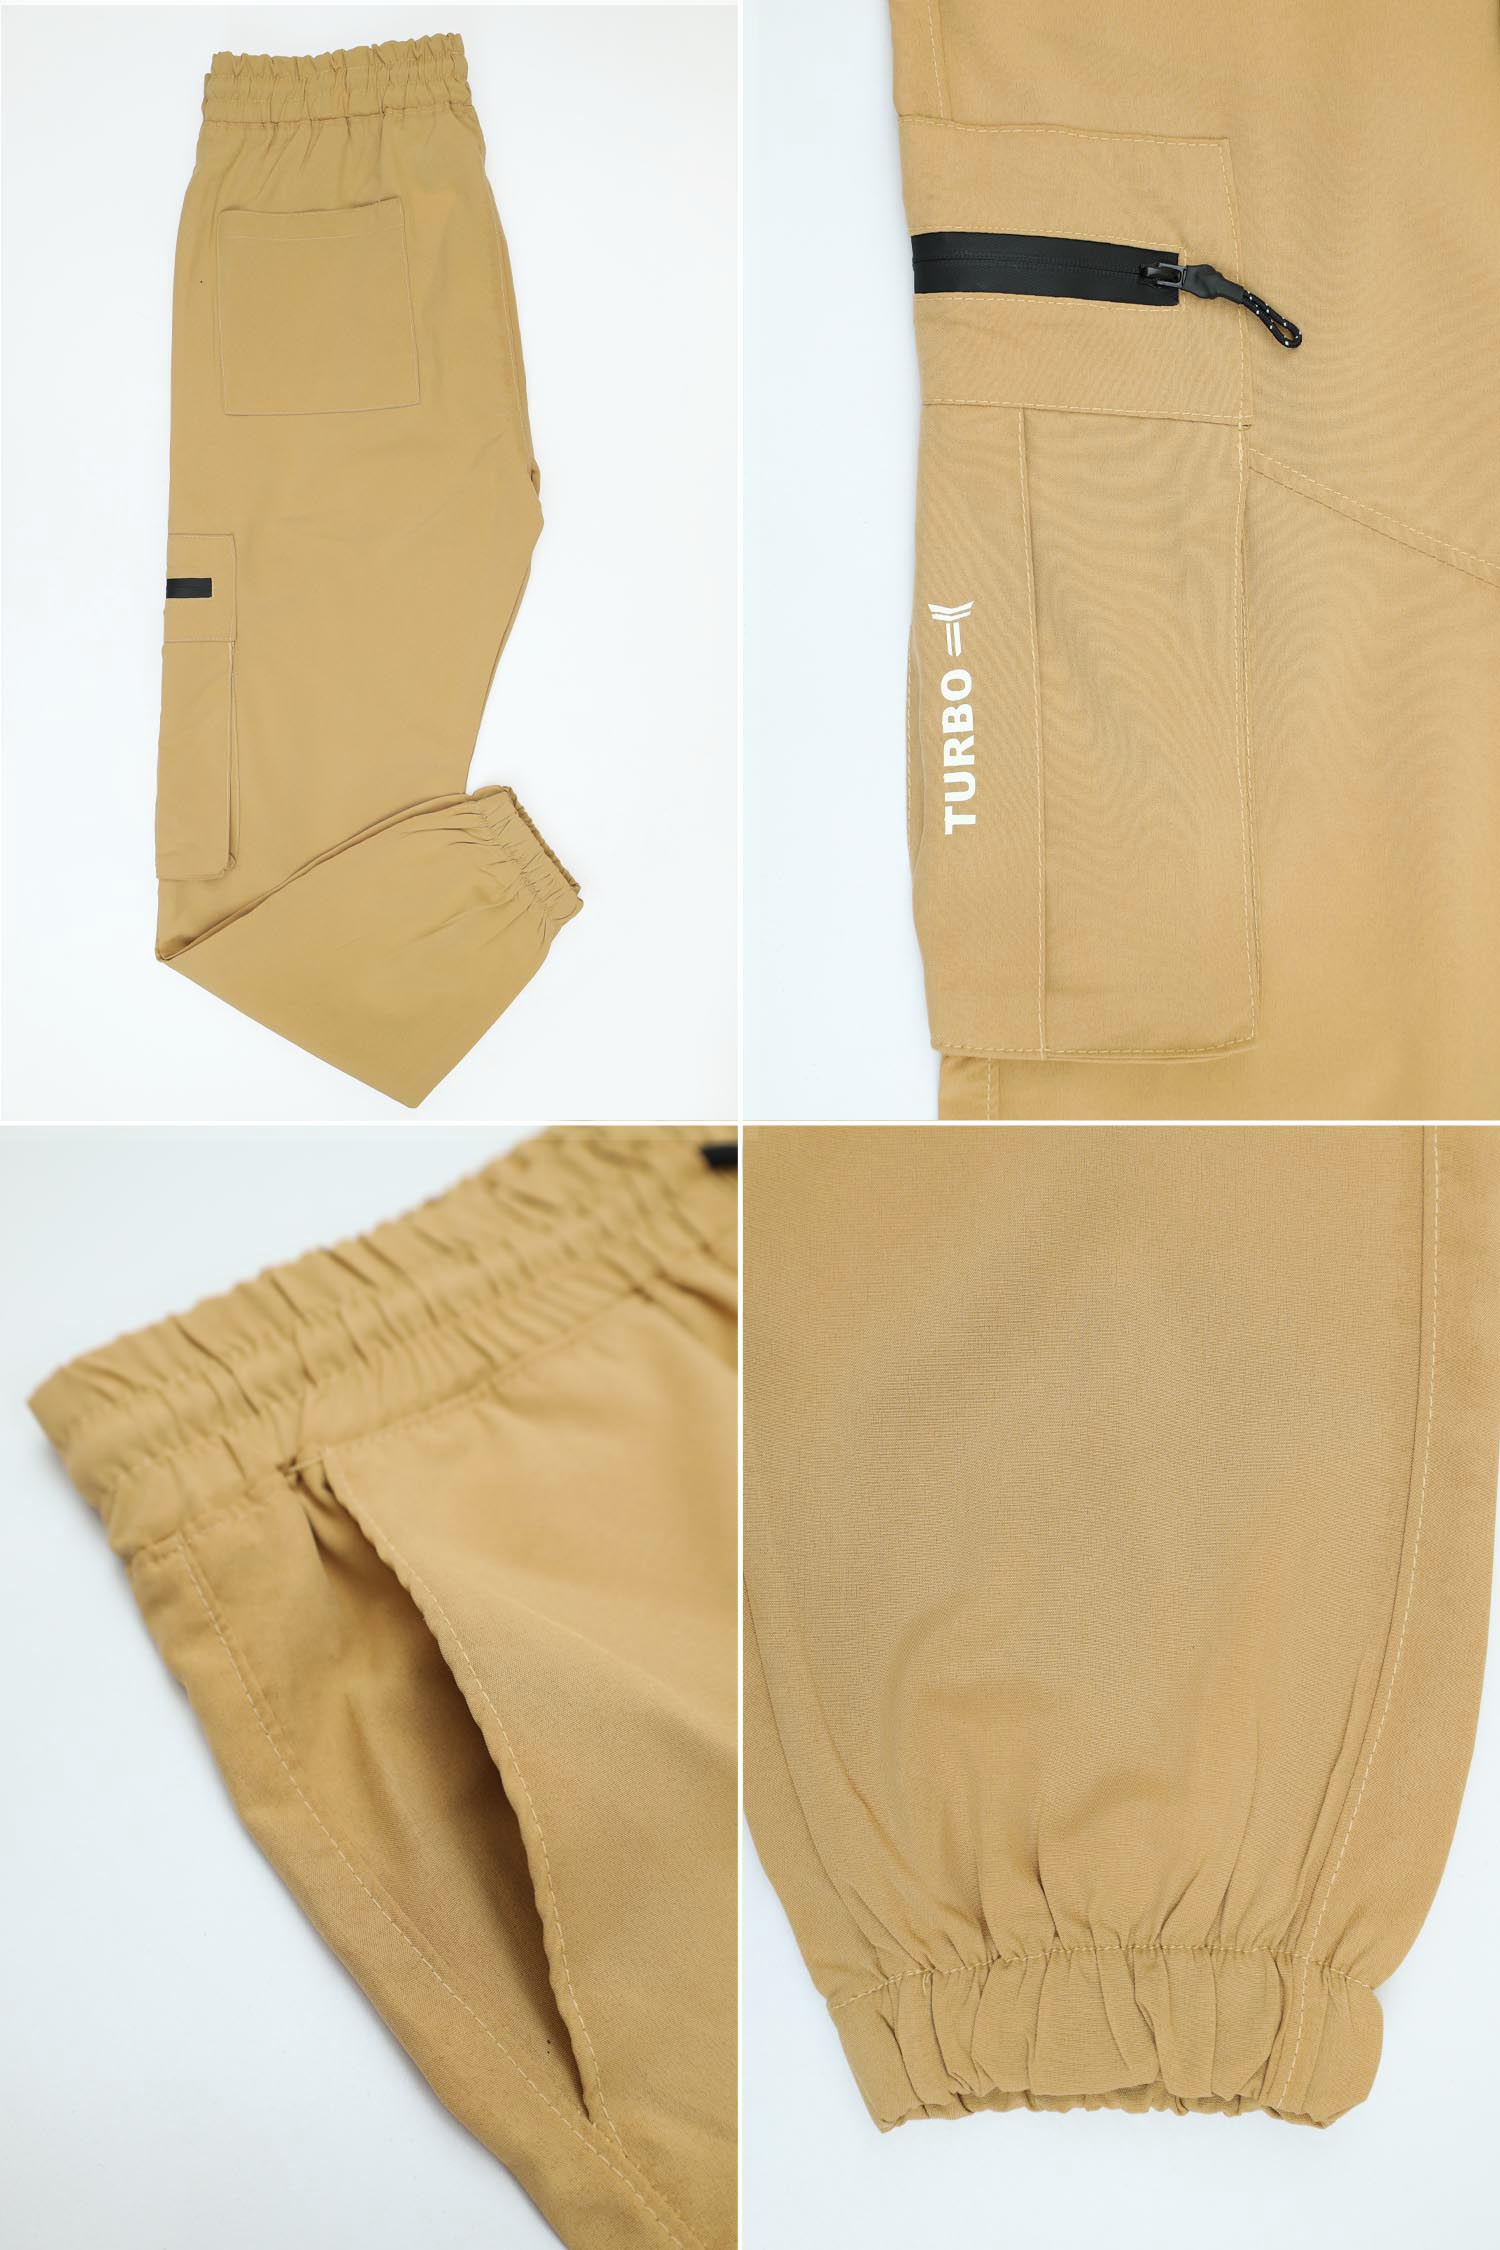 Turbo 6 Pockets Dryfit Cargo Trouser - Women